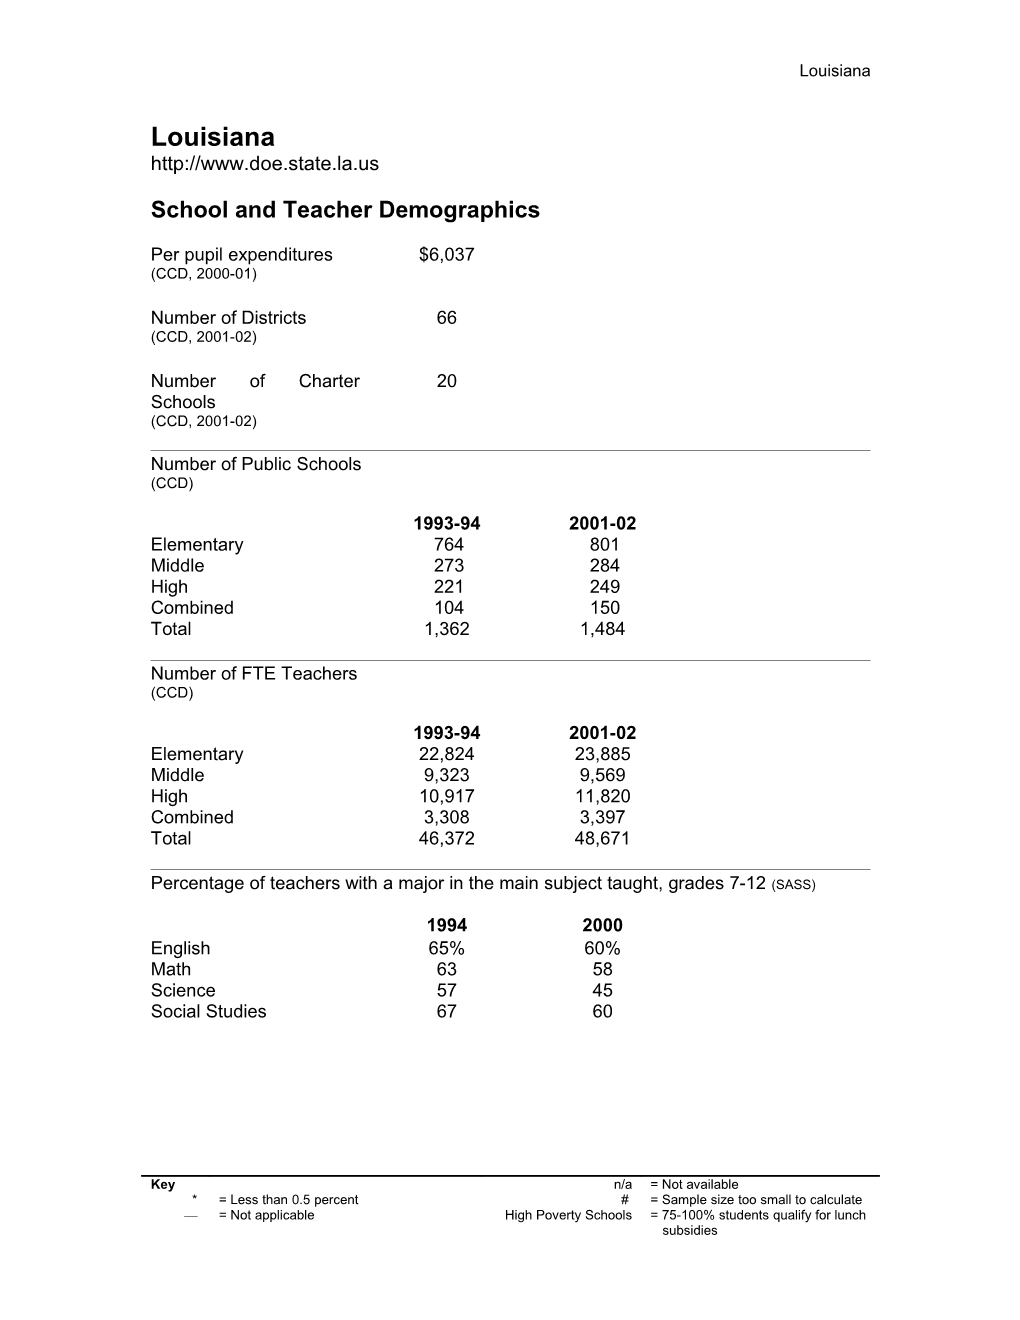 School and Teacher Demographics